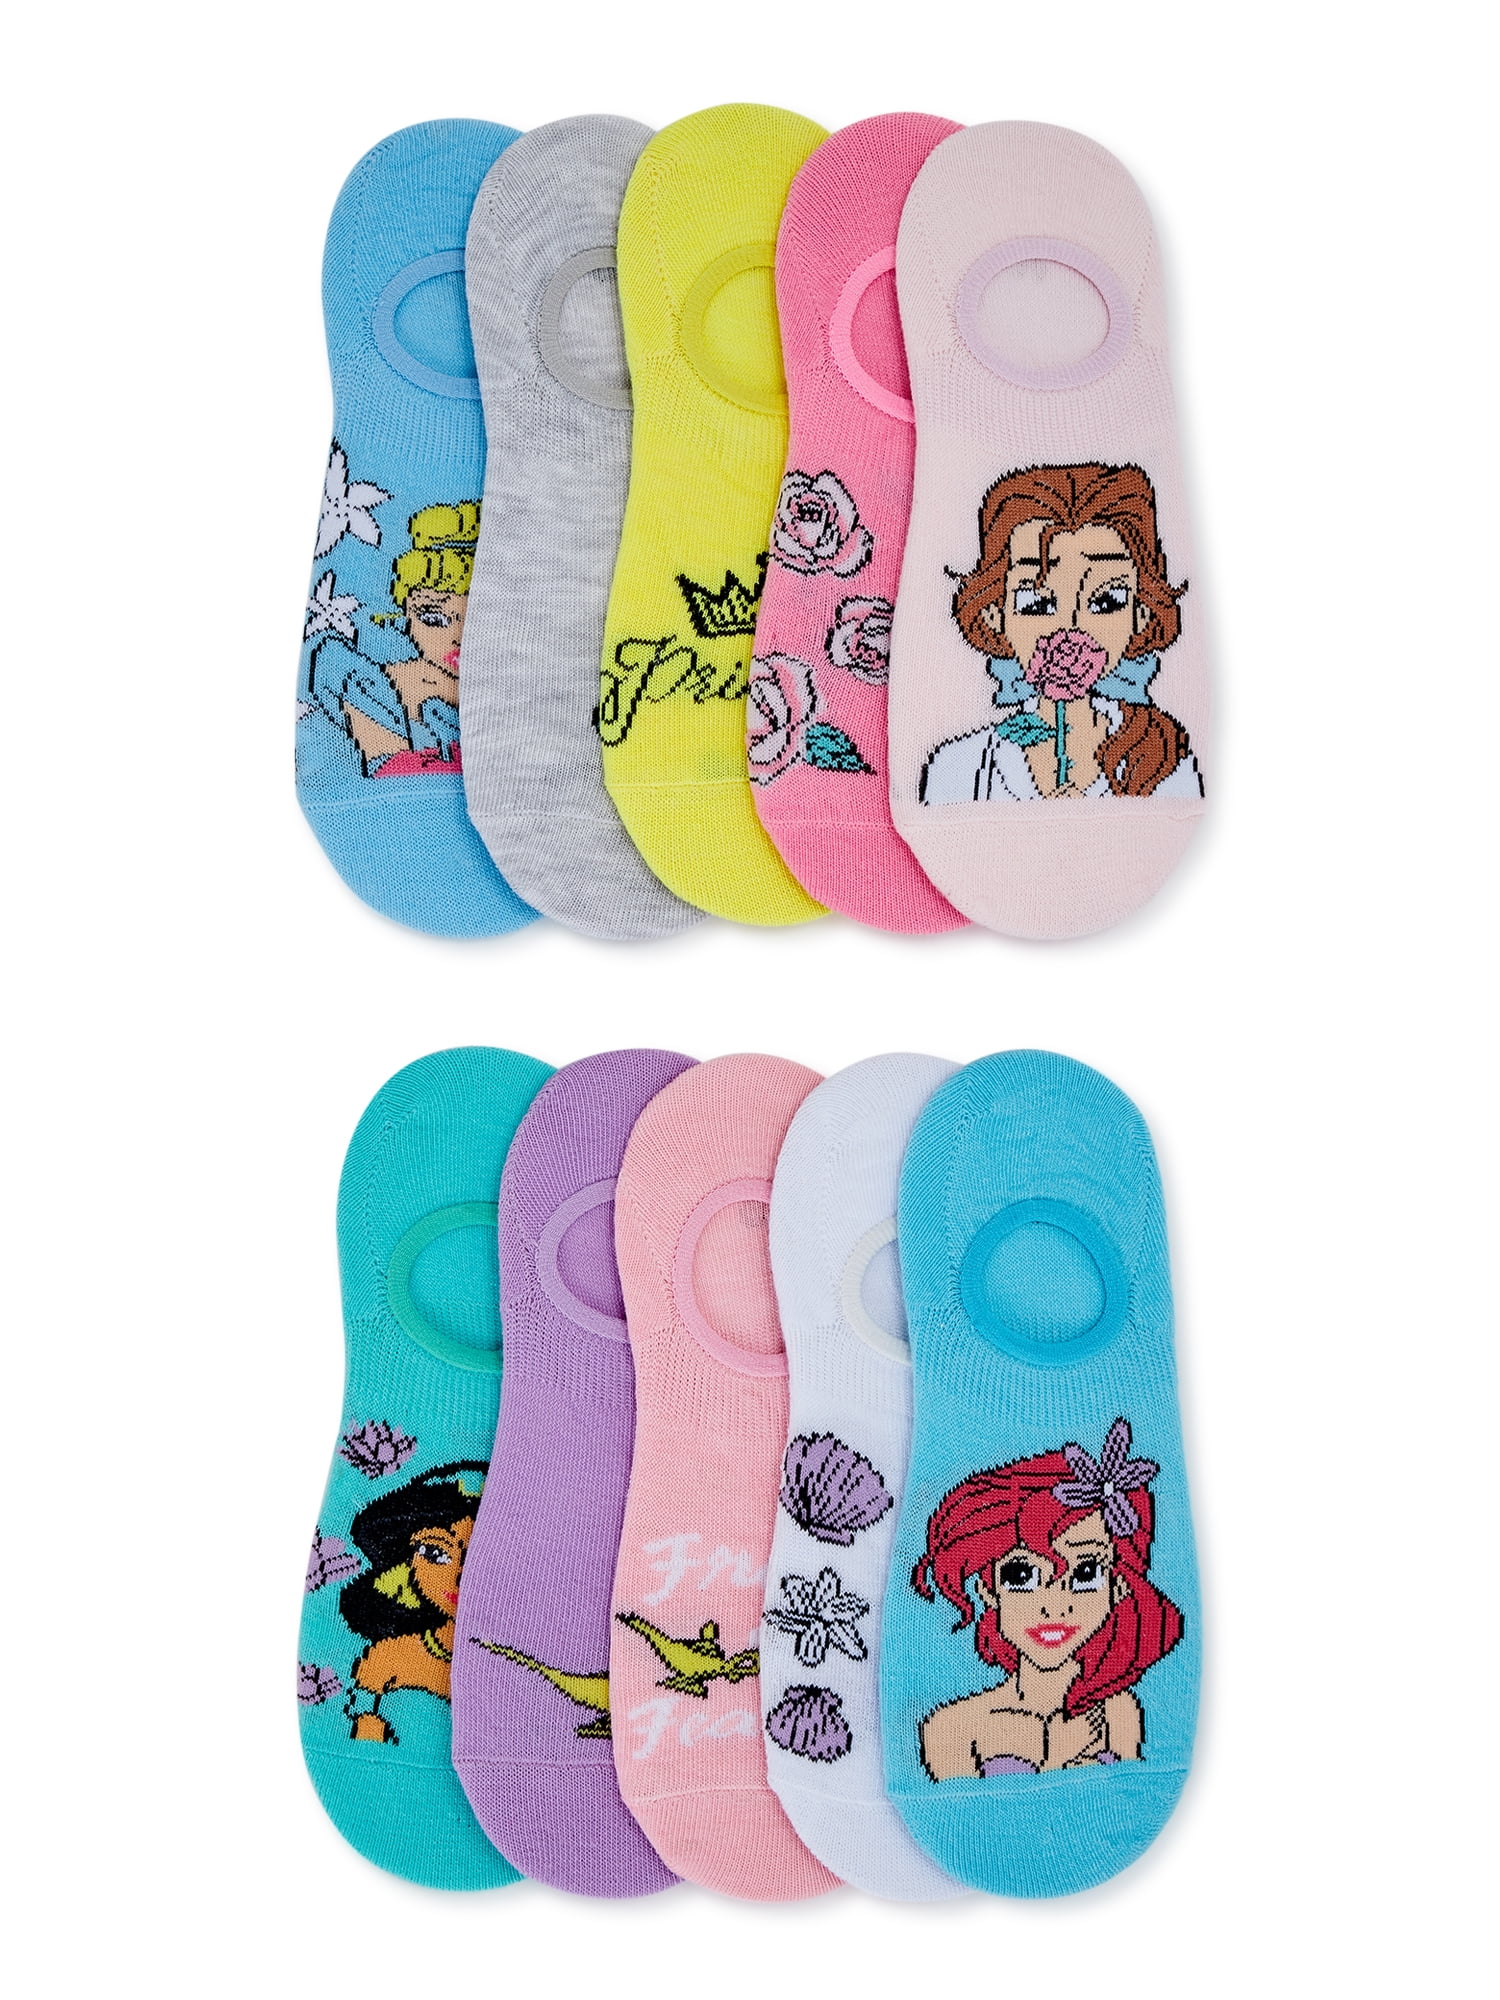 Disneys STITCH Ladies Socks 3 Three Pack SIZES 4-5-6-7-8 Bday Girls Gift 